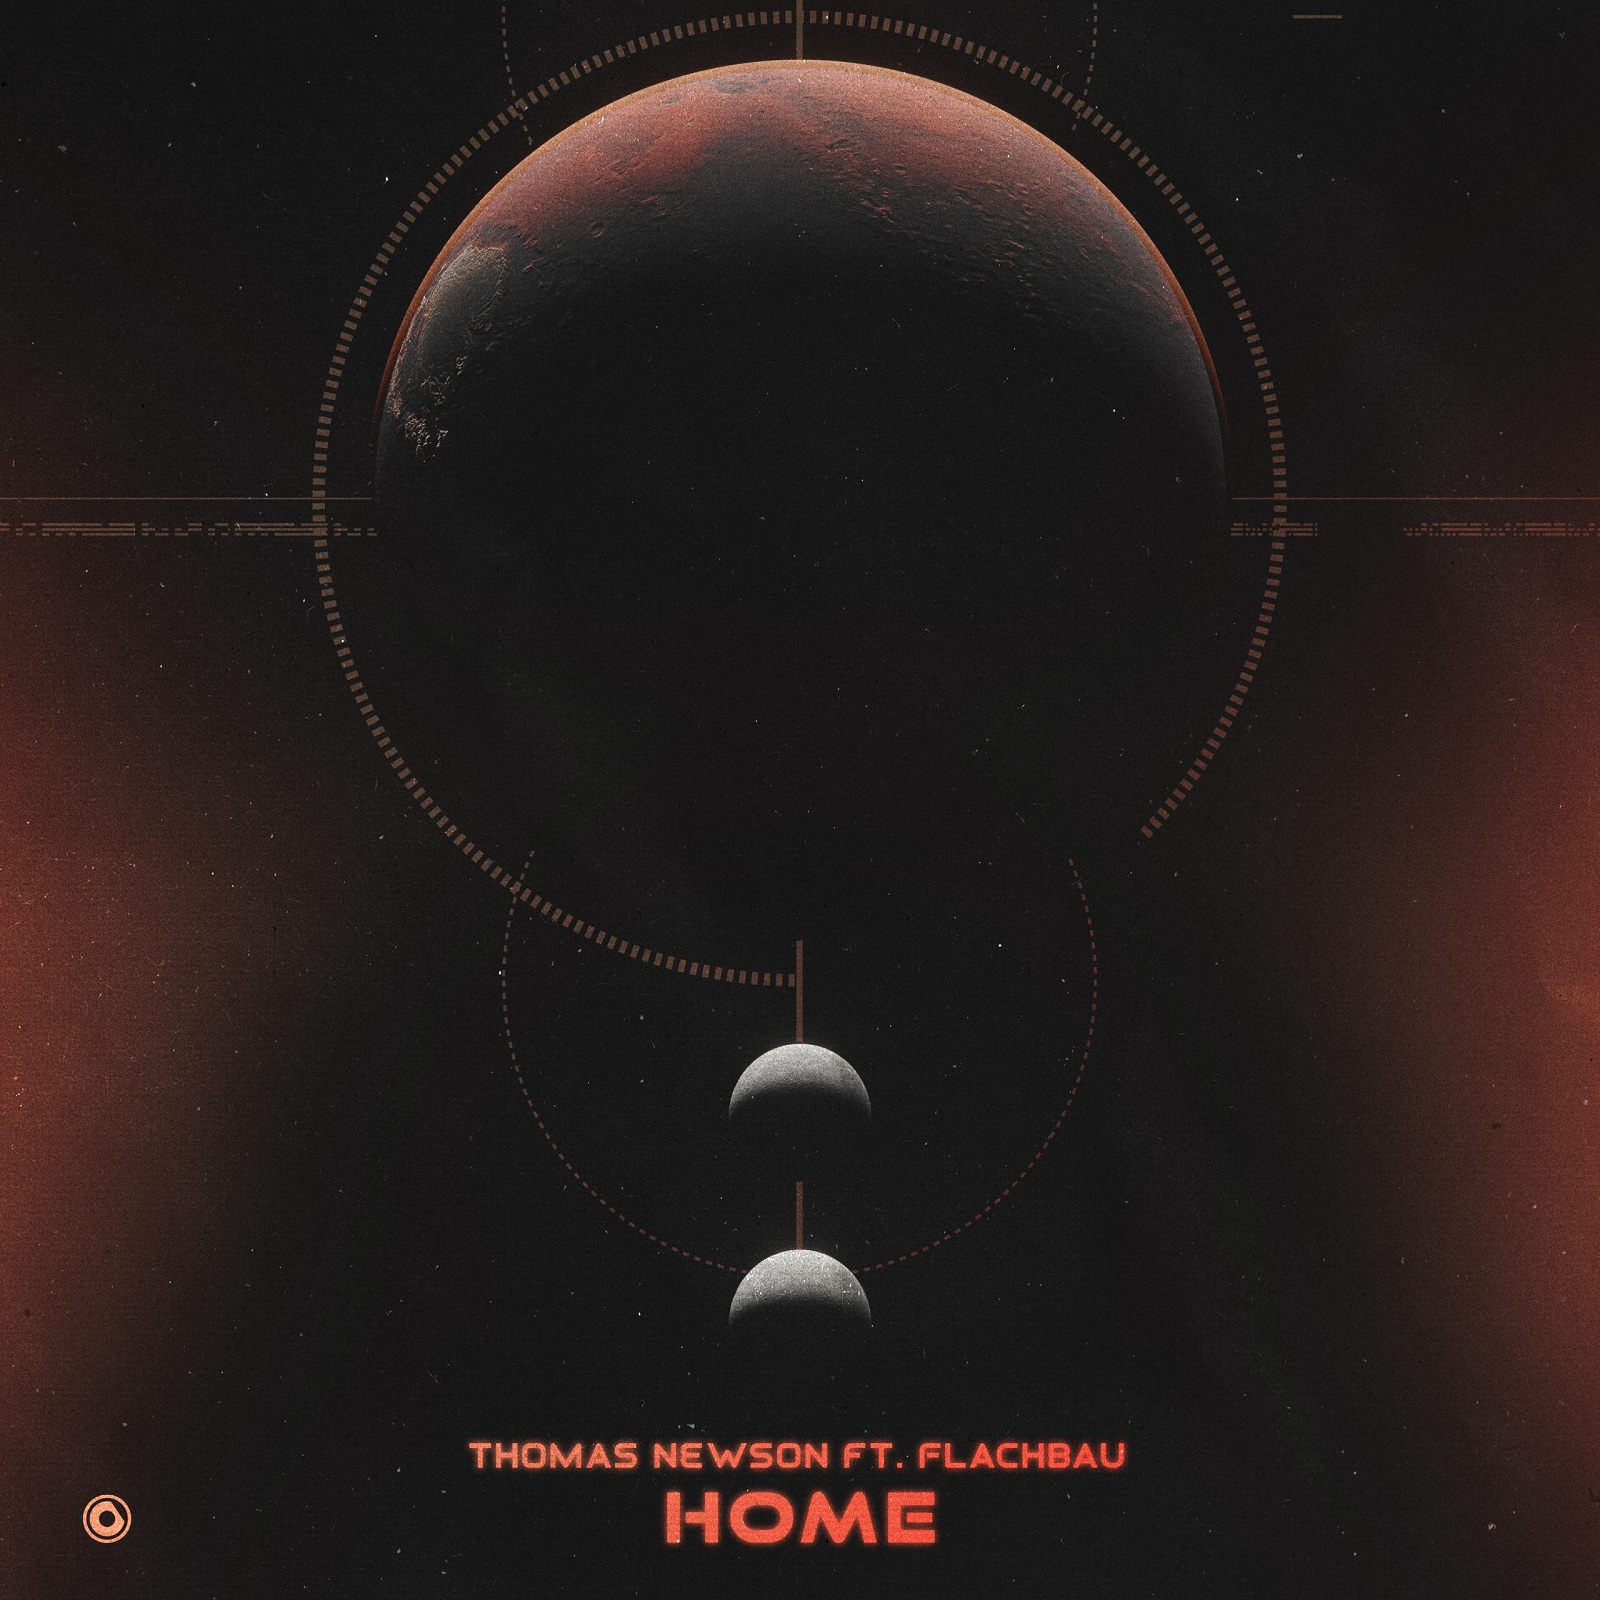 Thomas Newson ft. featuring Flachbau Home cover artwork